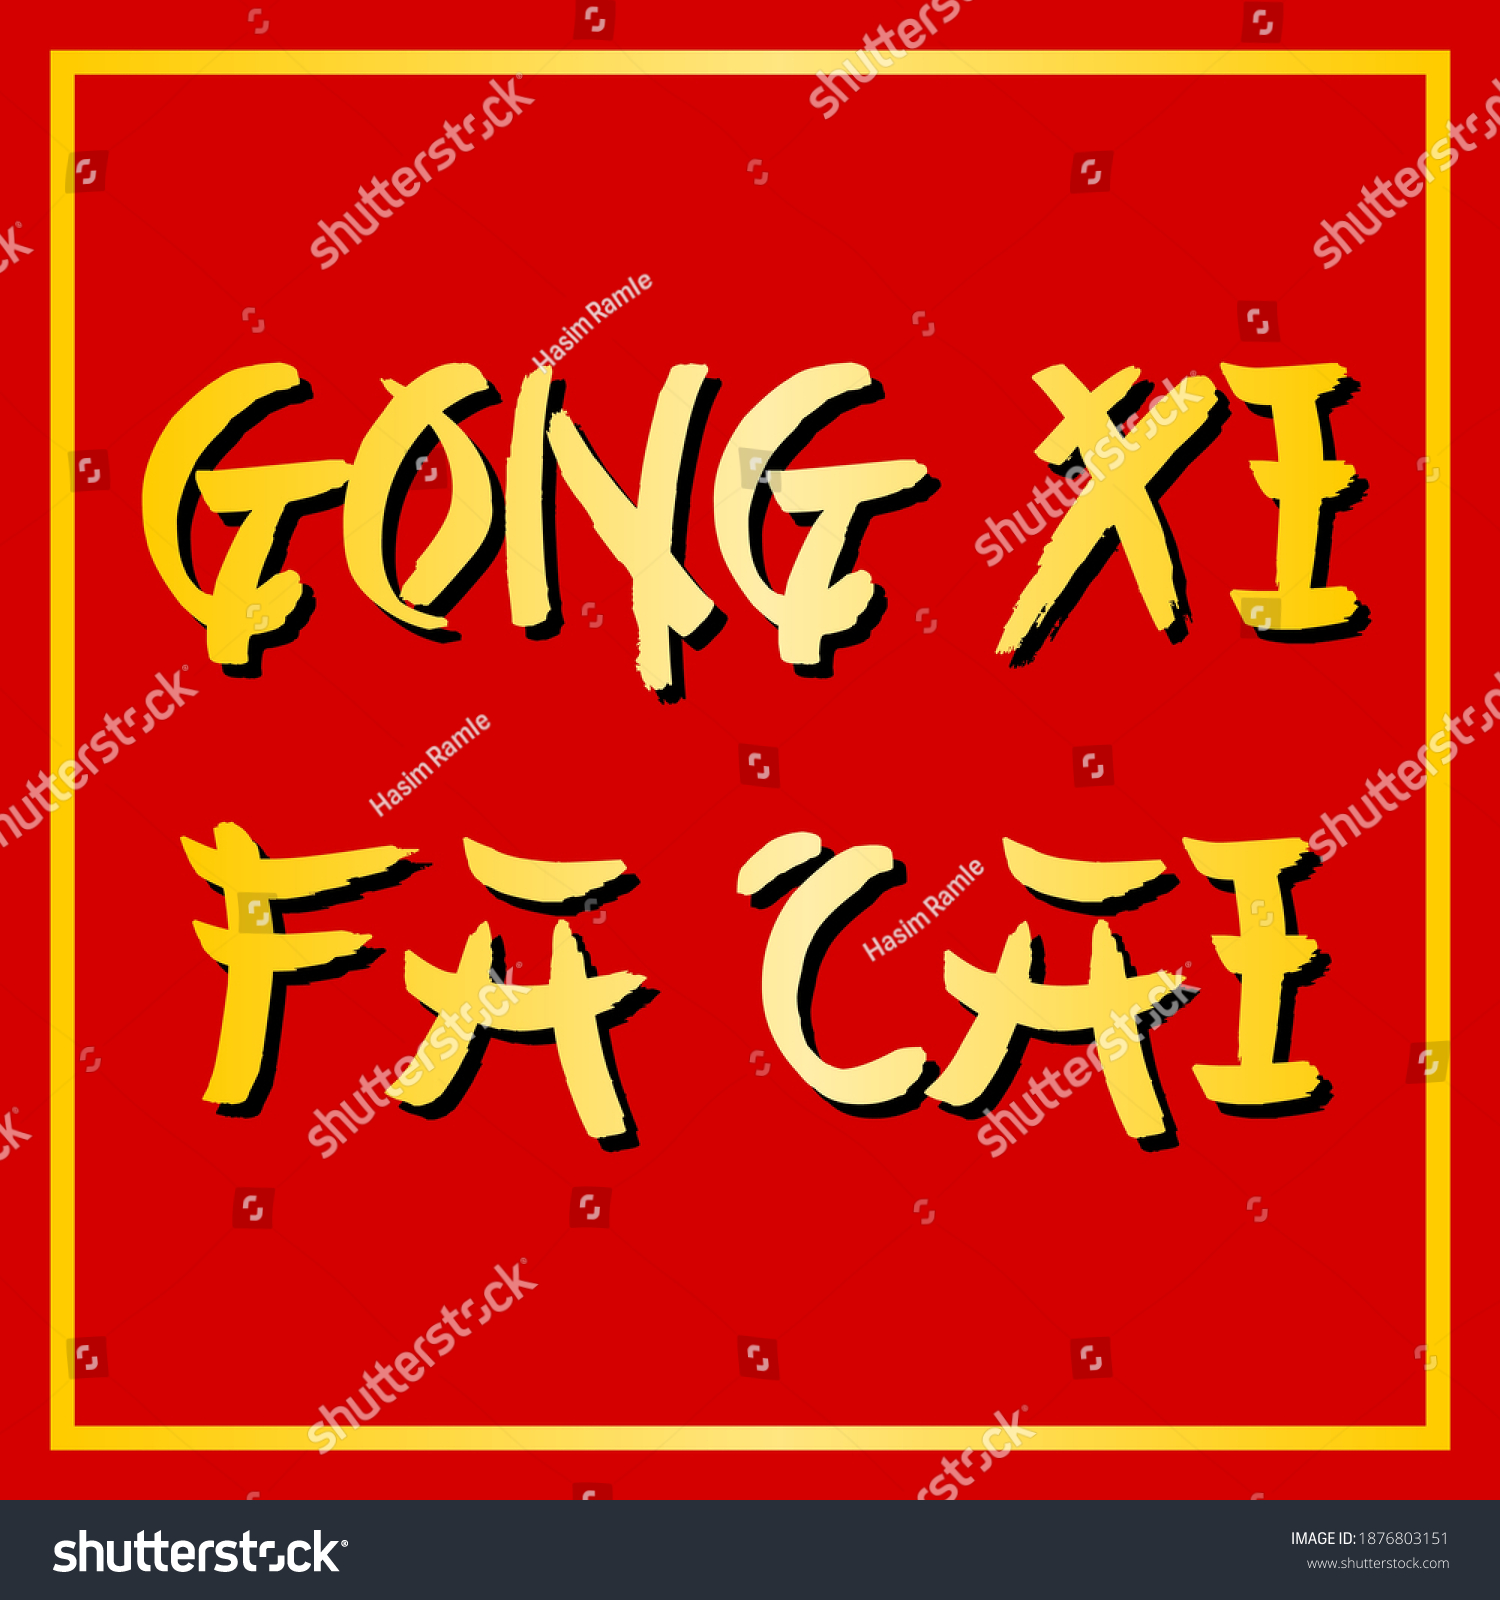 Font Gong Xi Fat Cai - KibrisPDR